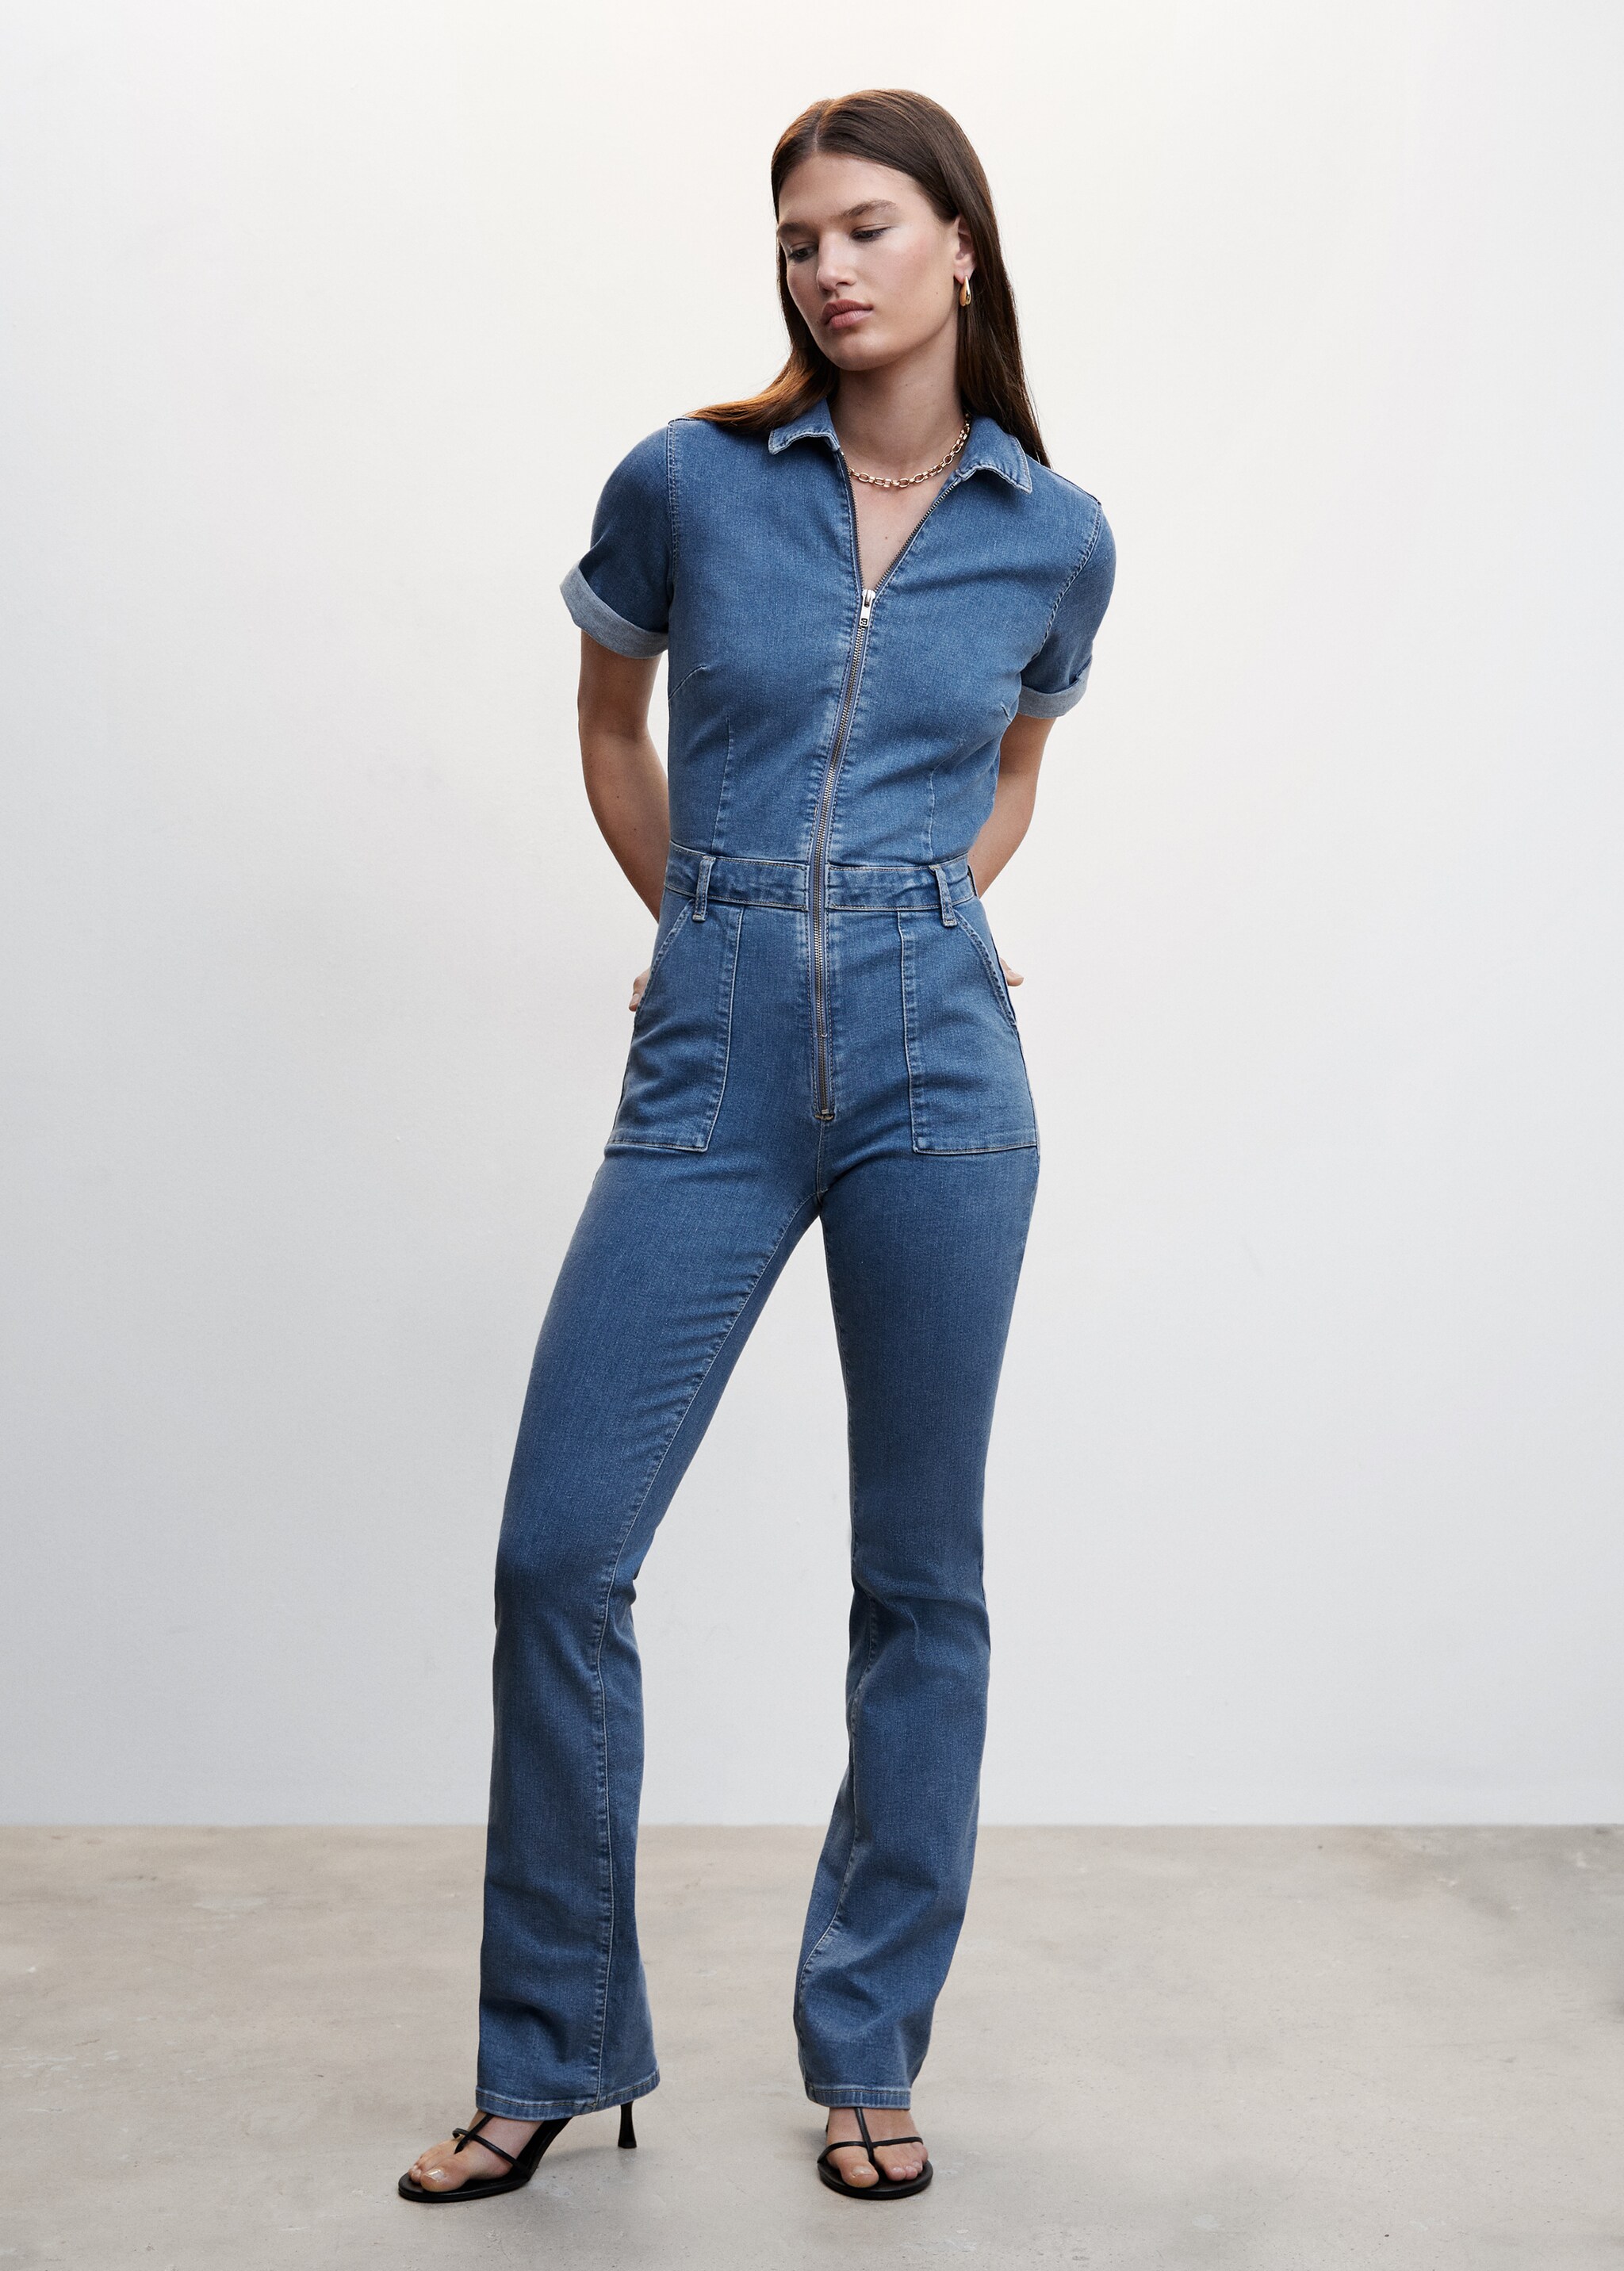 Jeans-Jumpsuit mit Reißverschluss - Allgemeine Ansicht